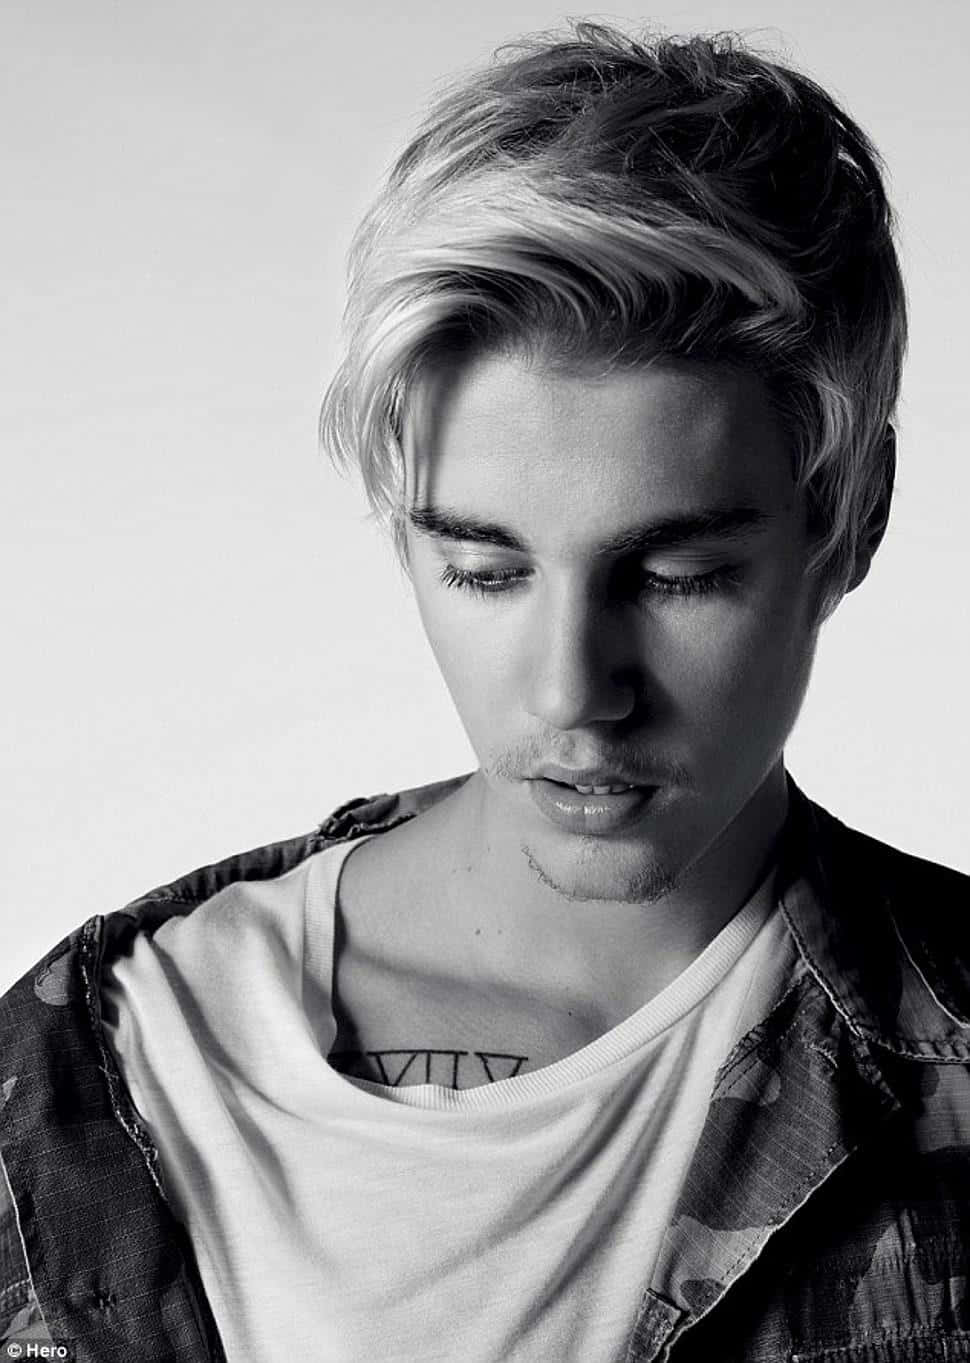 Popstjärnanjustin Bieber Uppträder På Scenen